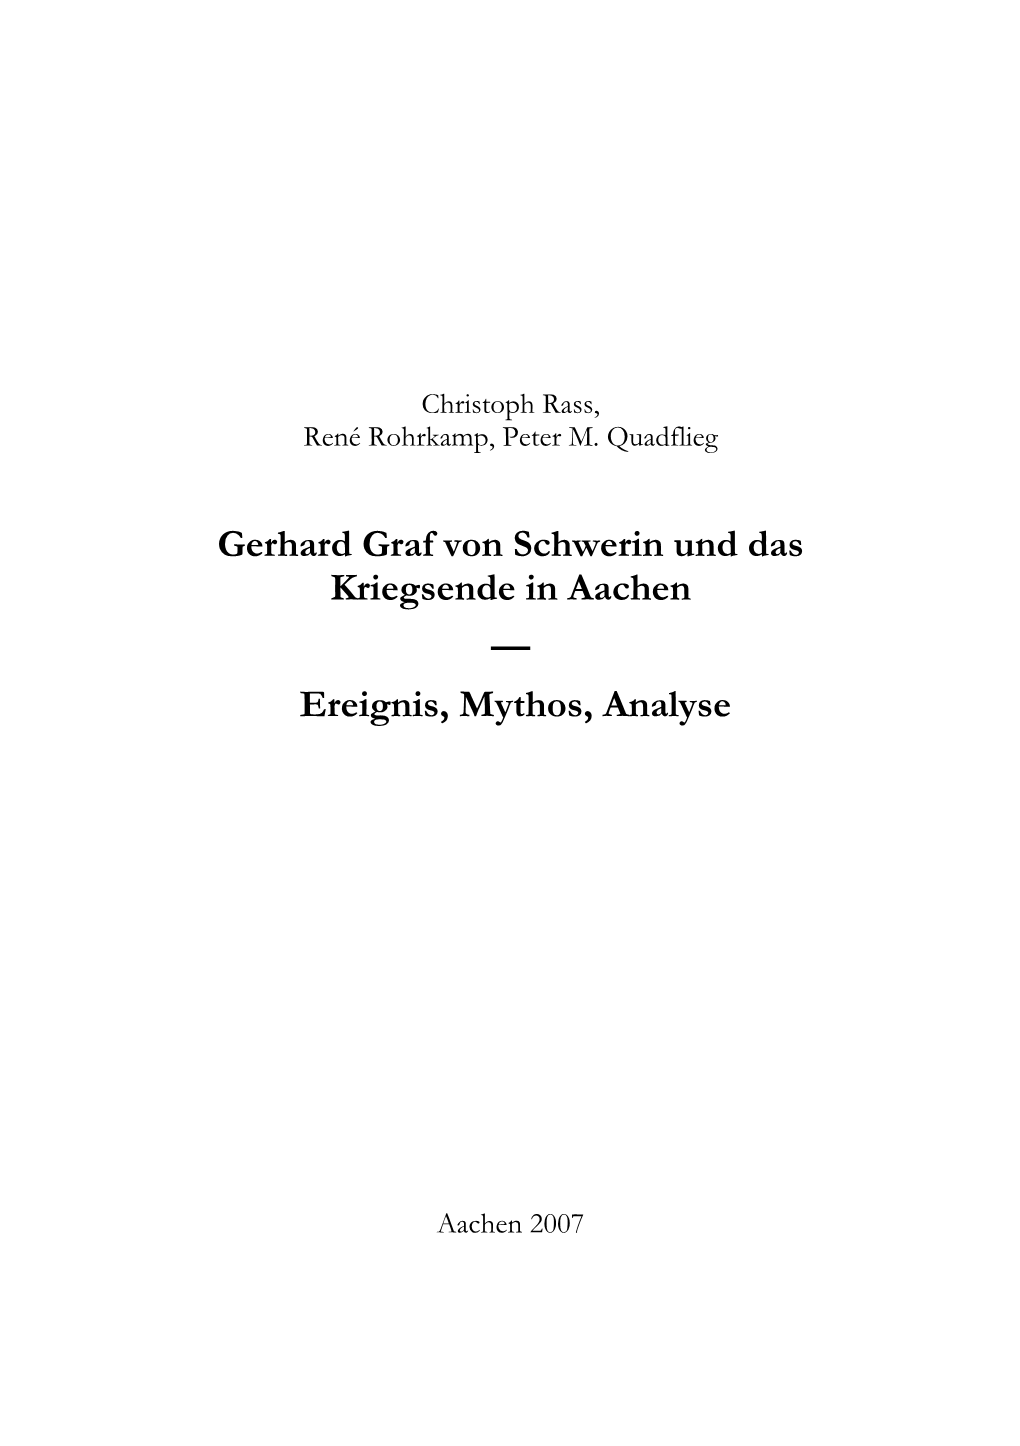 Gerhard Graf Von Schwerin Und Das Kriegsende in Aachen — Ereignis, Mythos, Analyse